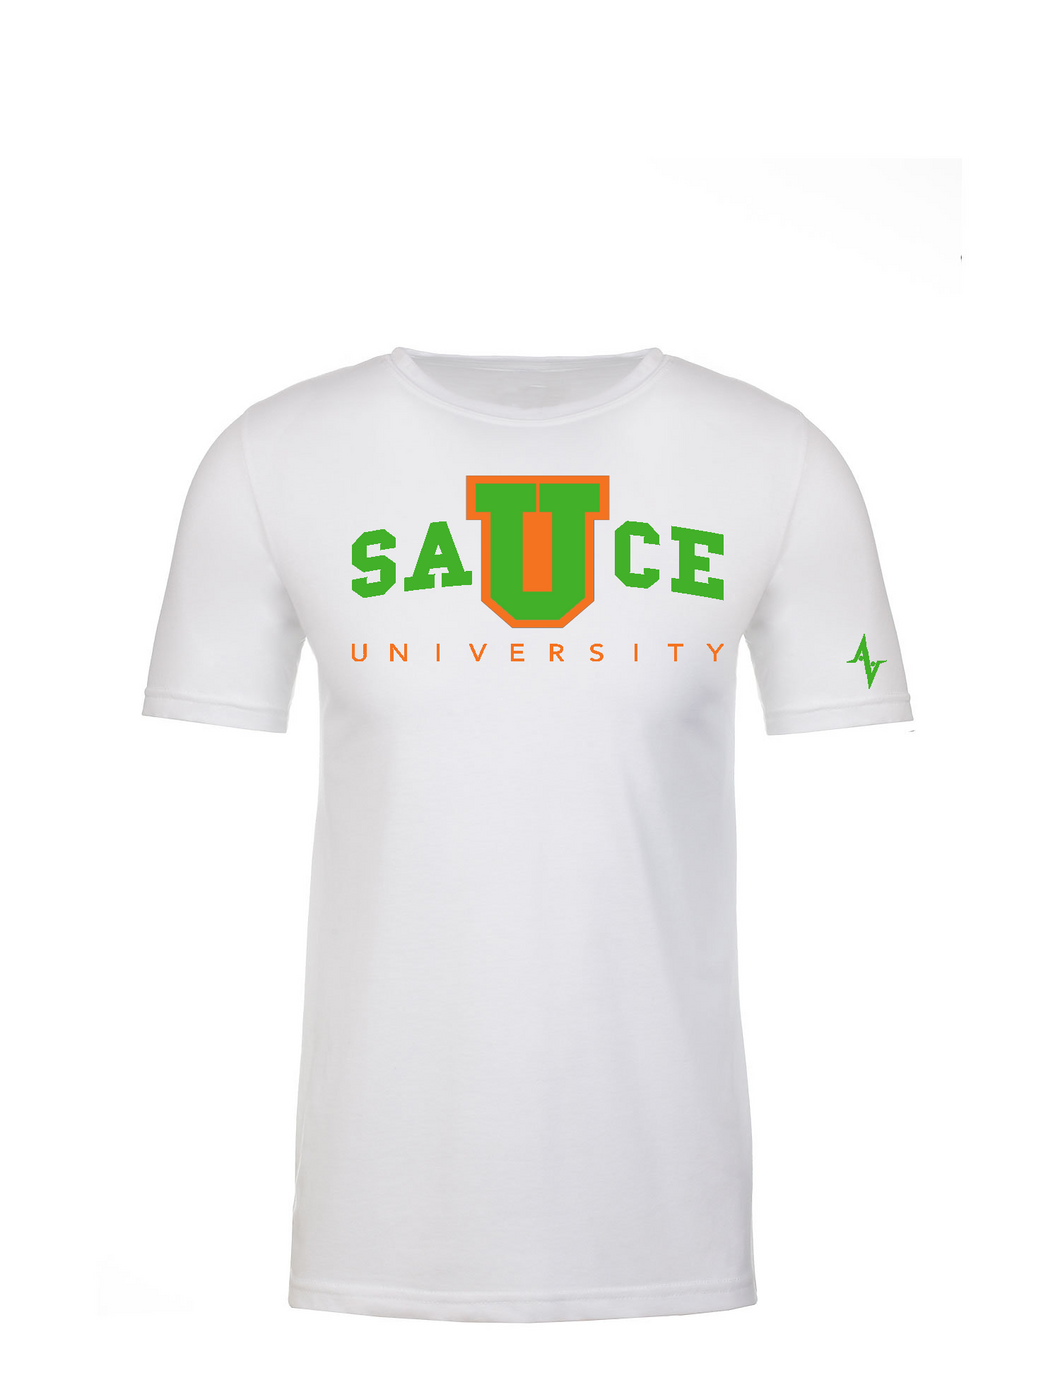 Sauce University Tshirt UM inspired